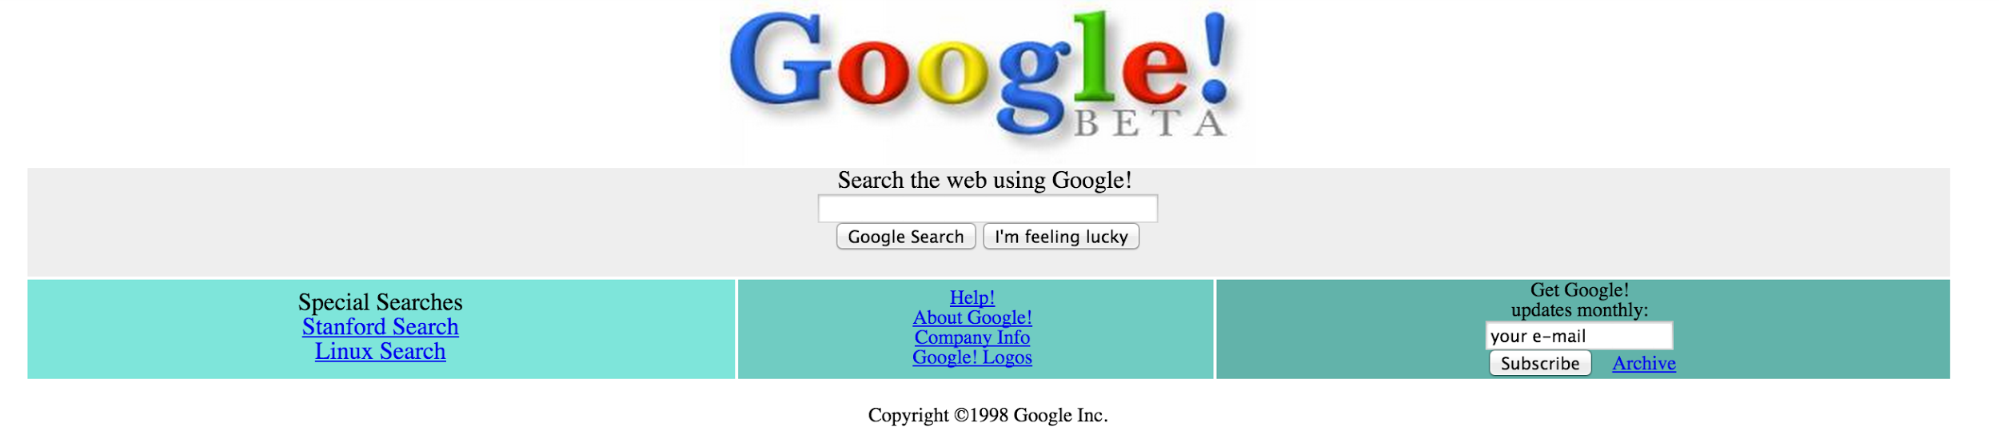 Google 1998. Google 1995. Гугл в 1990. Как выглядел гугл в 1998. Https policies google